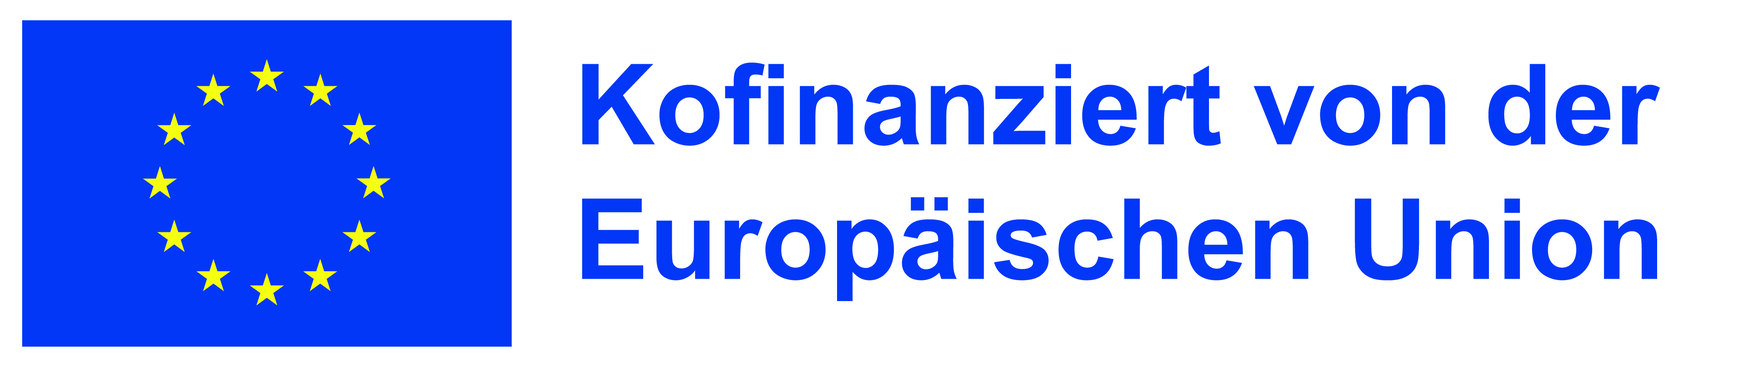 Das Logo besteht aus der Flagge der Europäischen Union und dem Schriftzug Kofinanziert von der Europäischen Union.